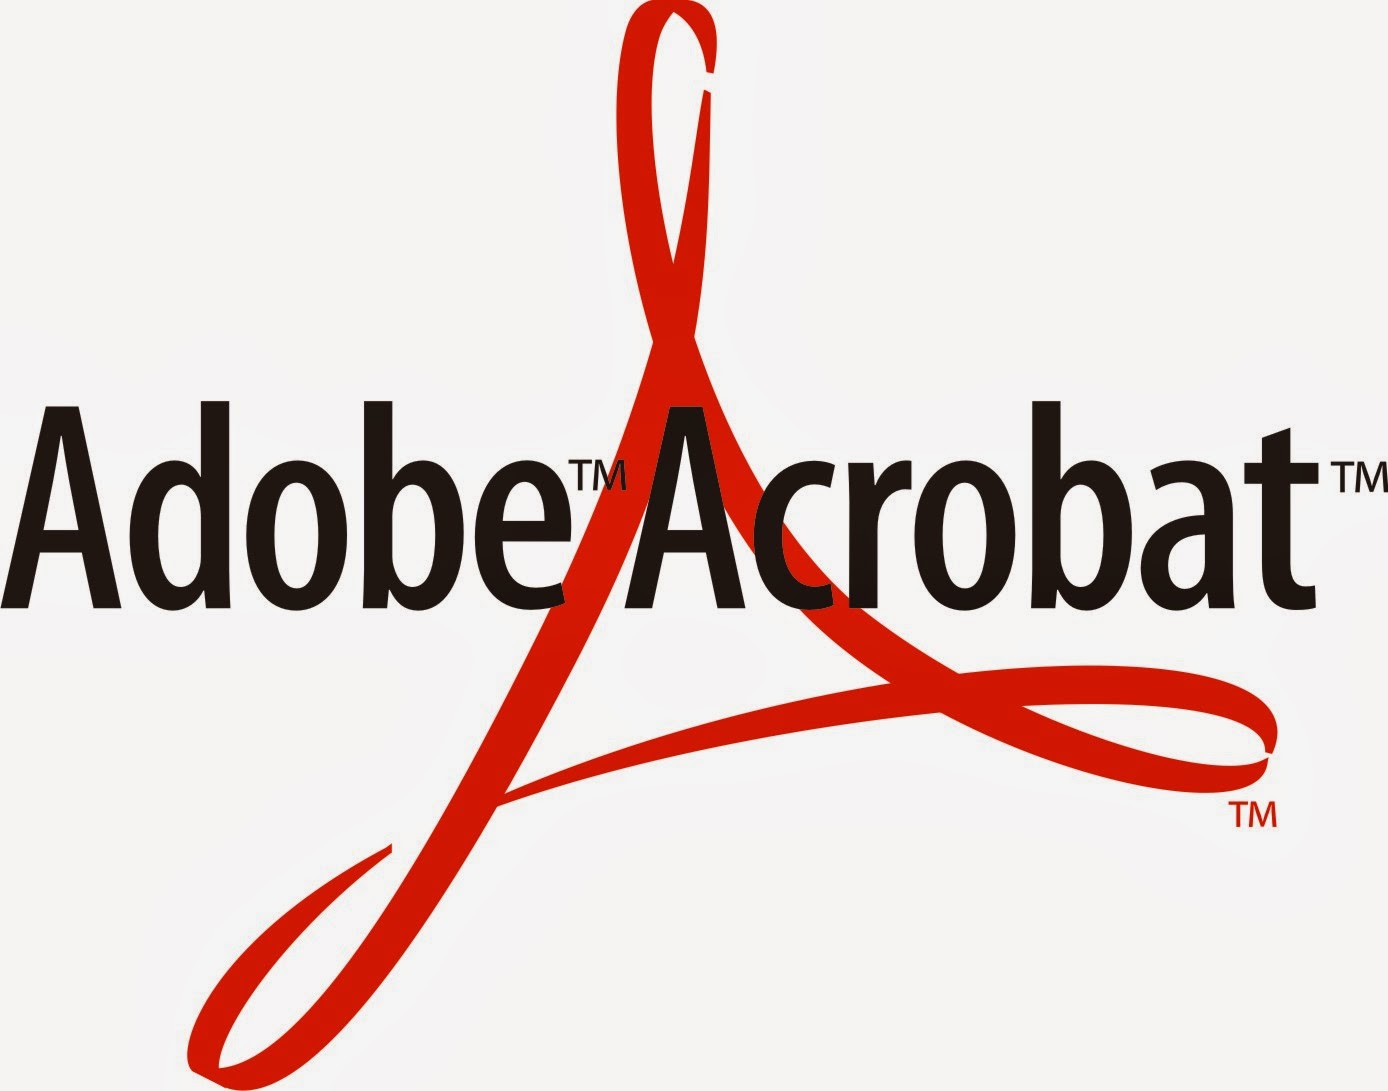 Formattare una casella di testo in Adobe Acrobat